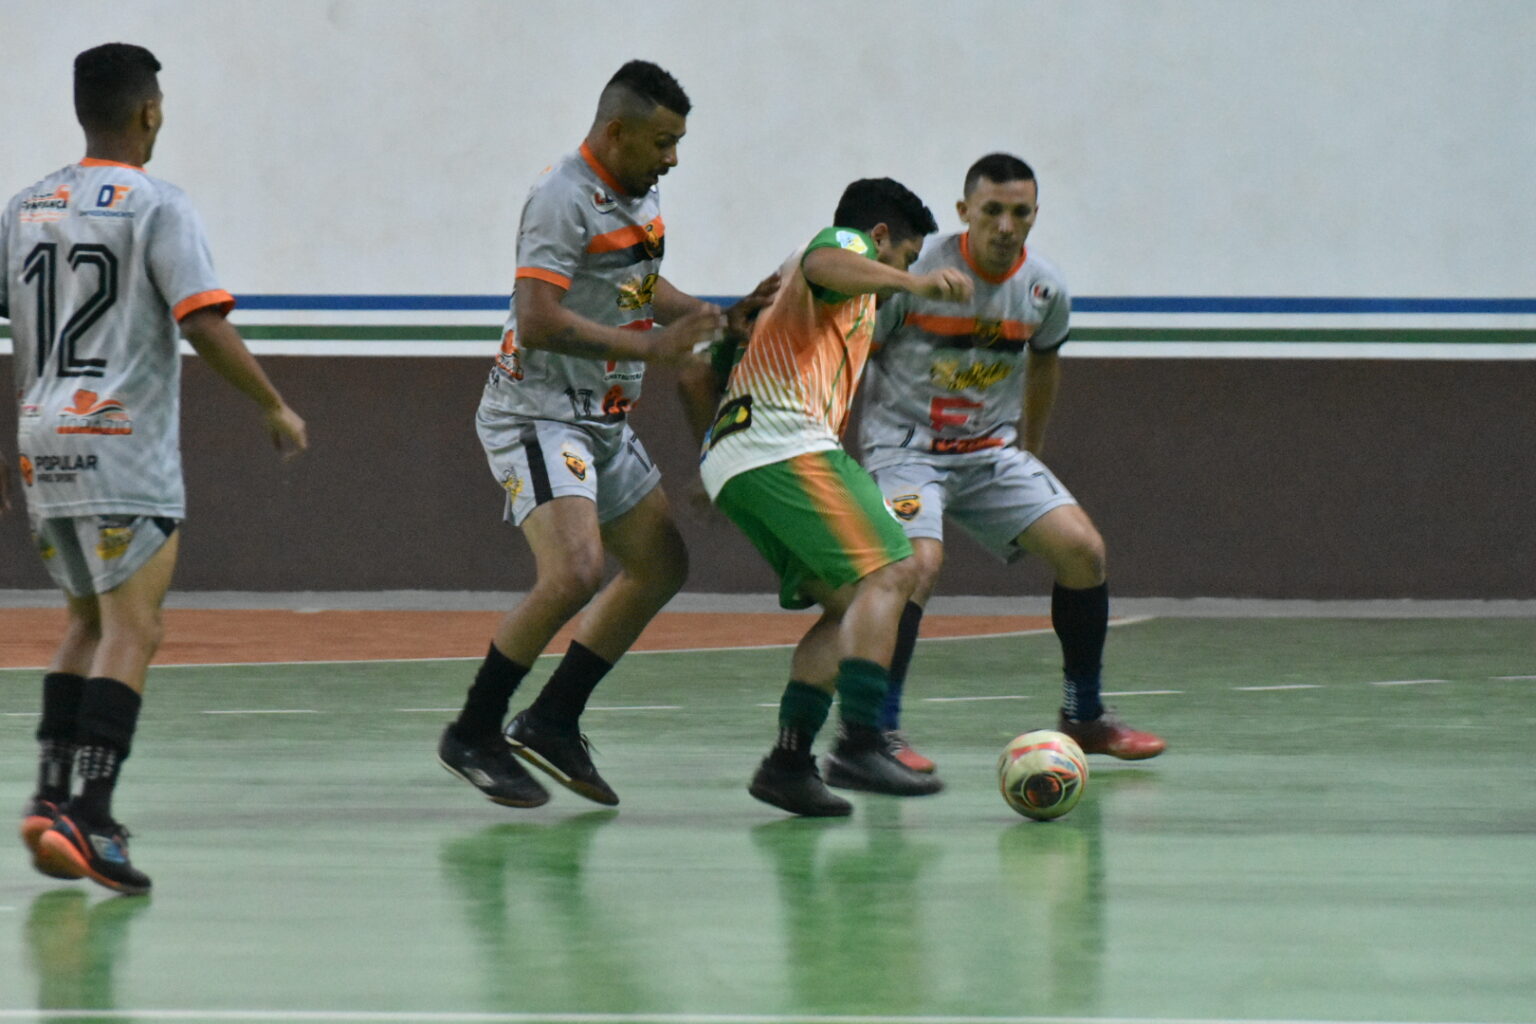  Semel abre inscrições para o tradicional Copão de Futsal